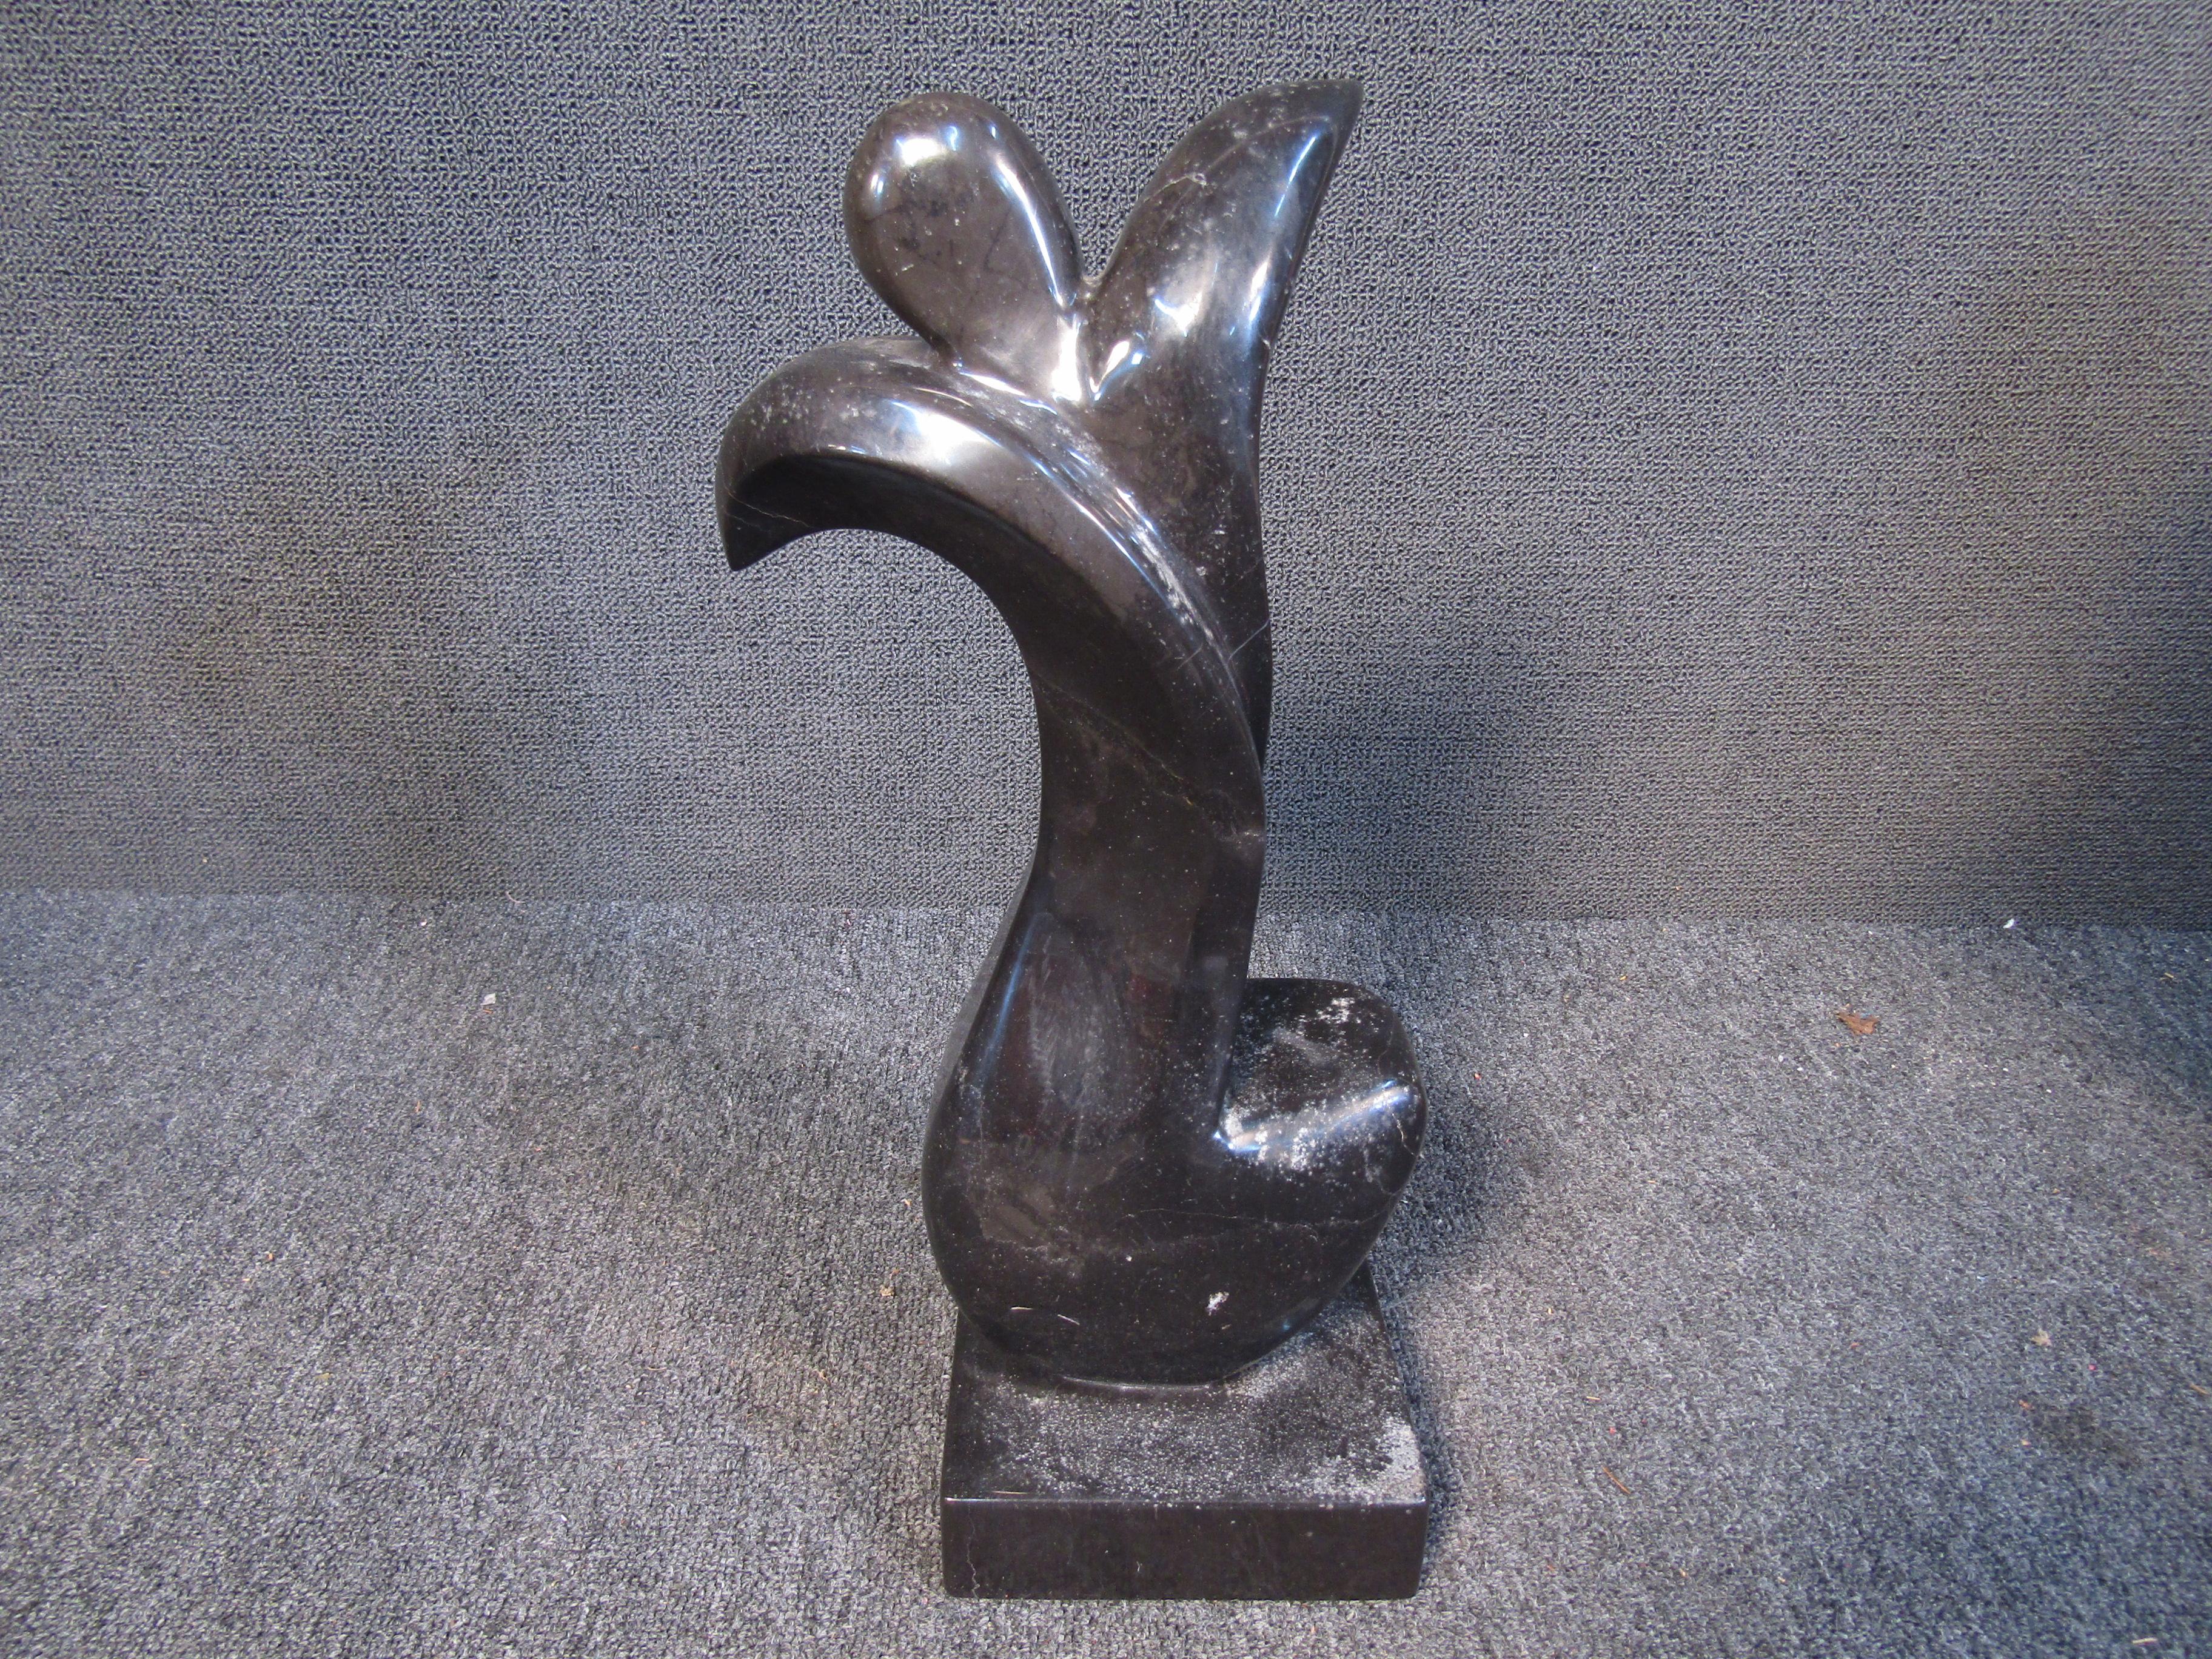 Cette élégante sculpture de table présente une forme figurative abstraite en marbre noir. La sculpture est fabriquée au Mexique et signée 